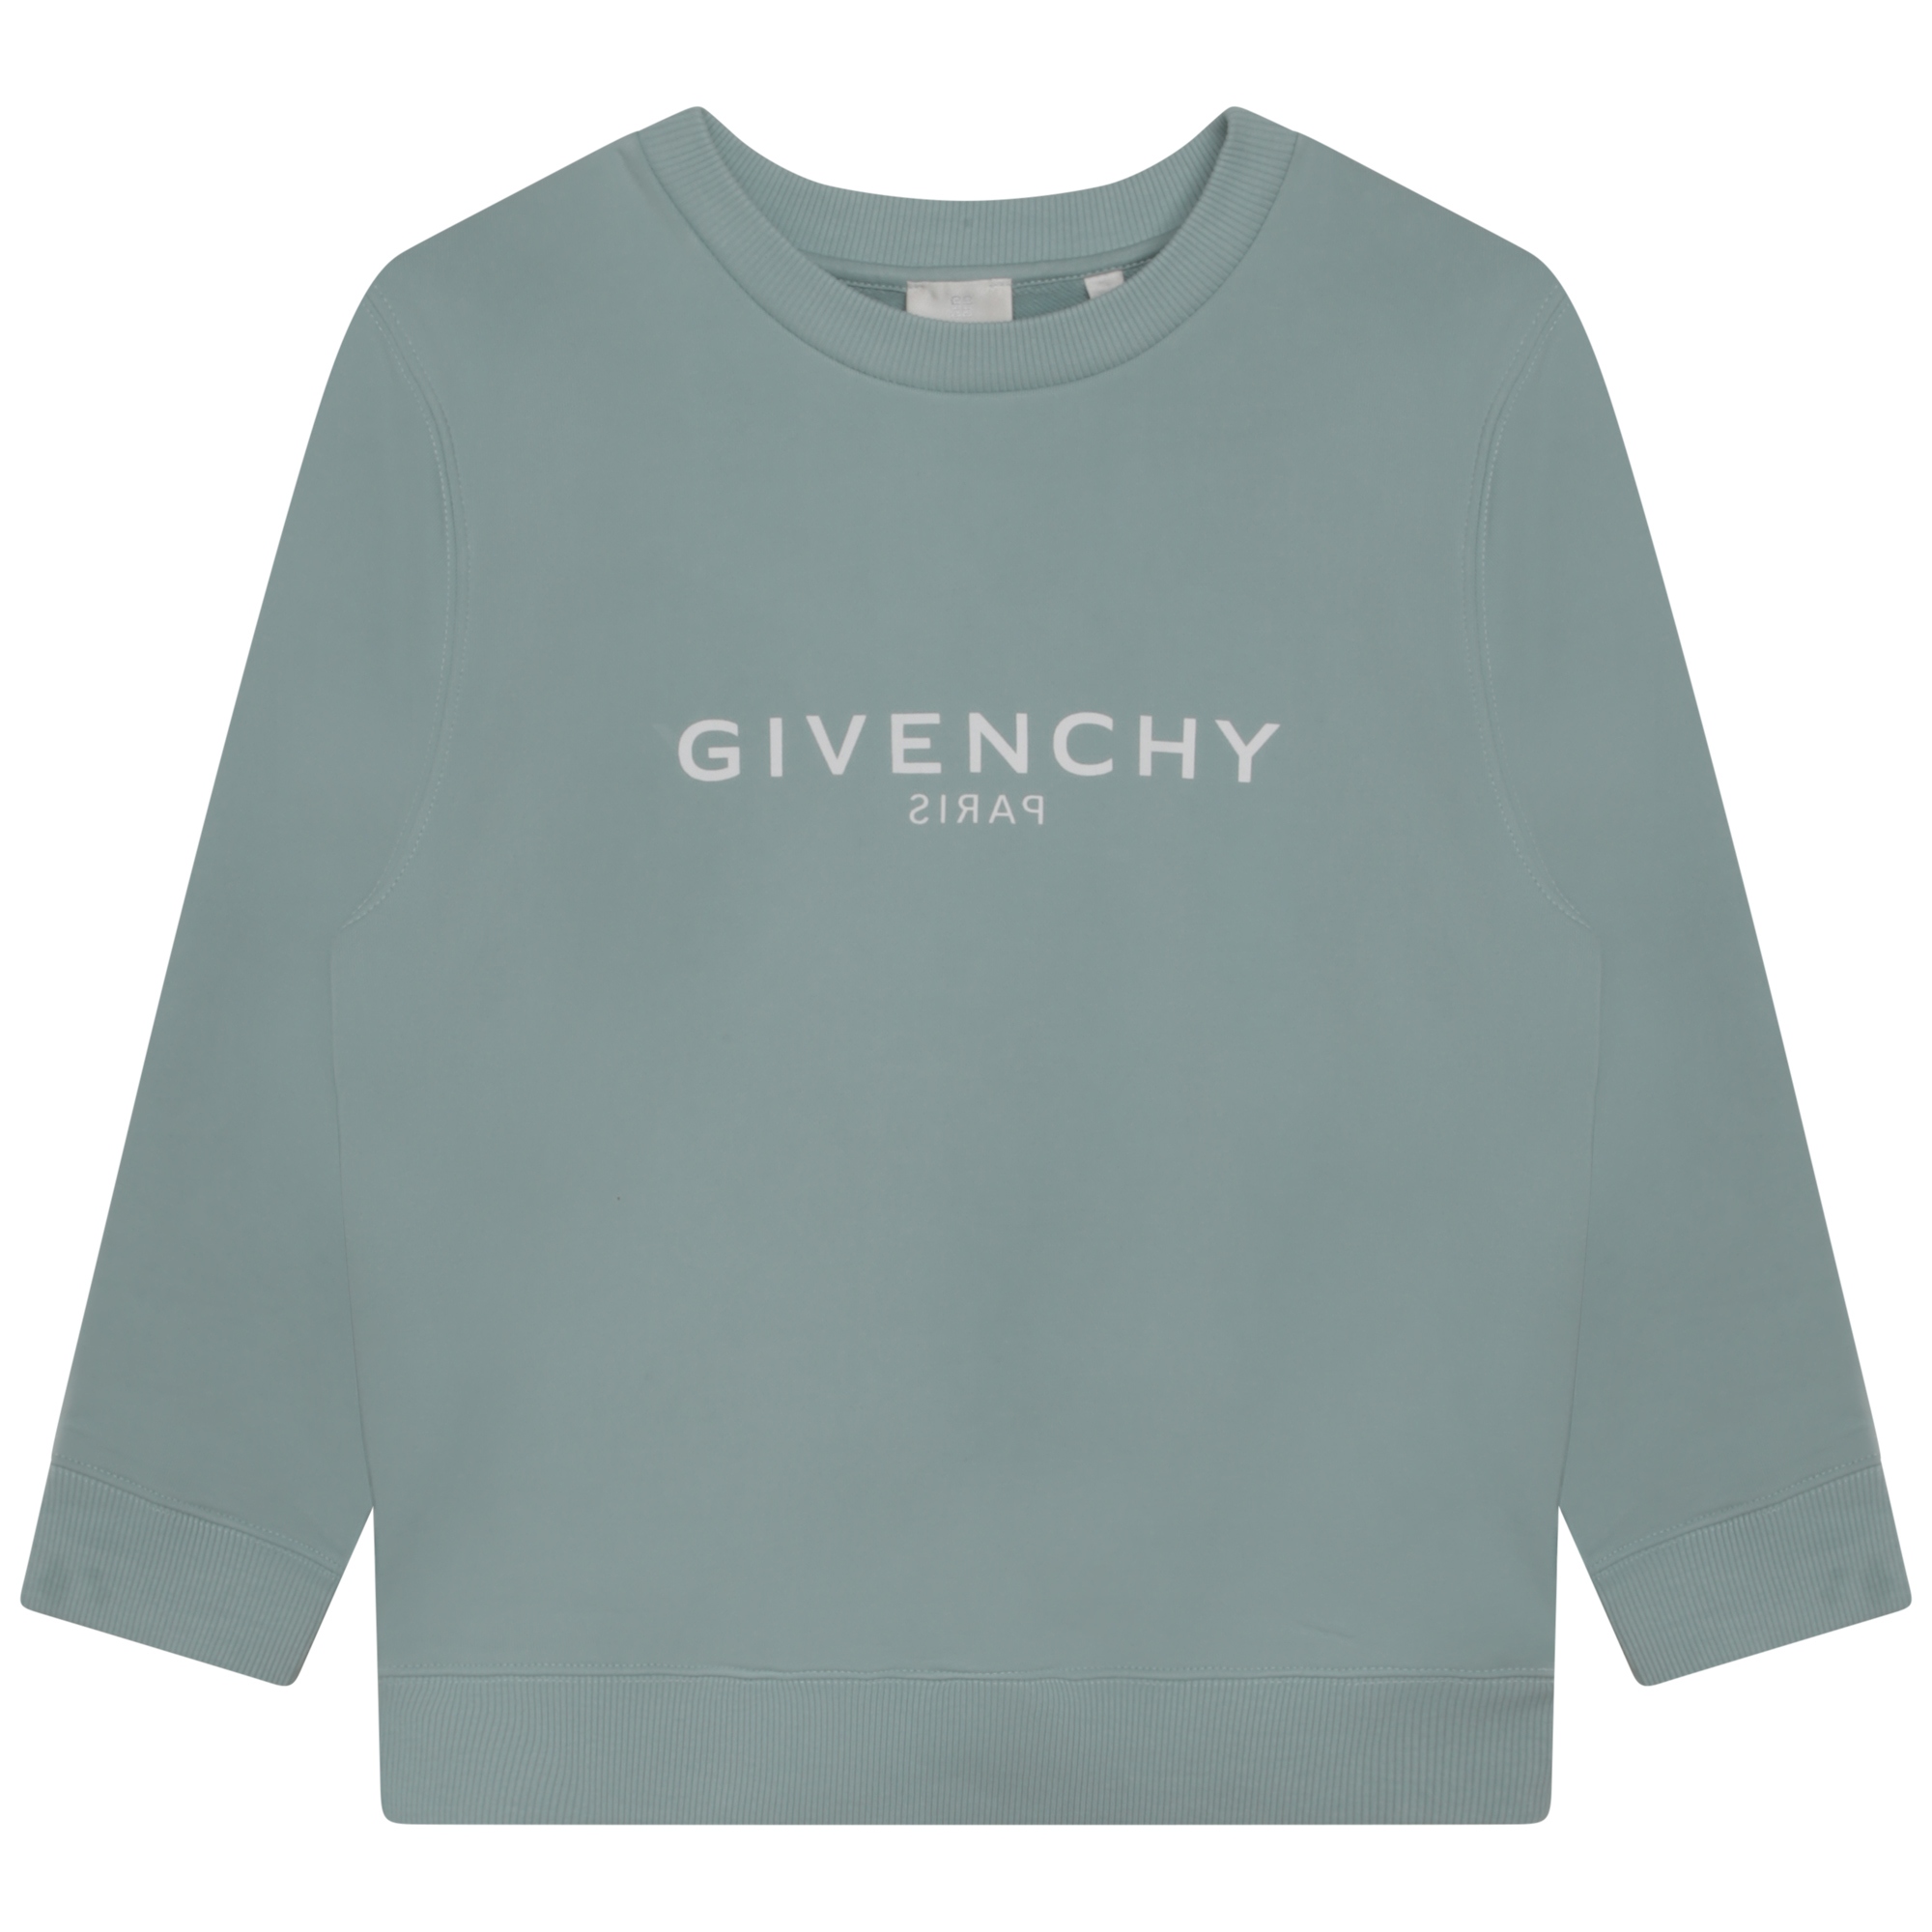 Sweatshirt GIVENCHY Für JUNGE